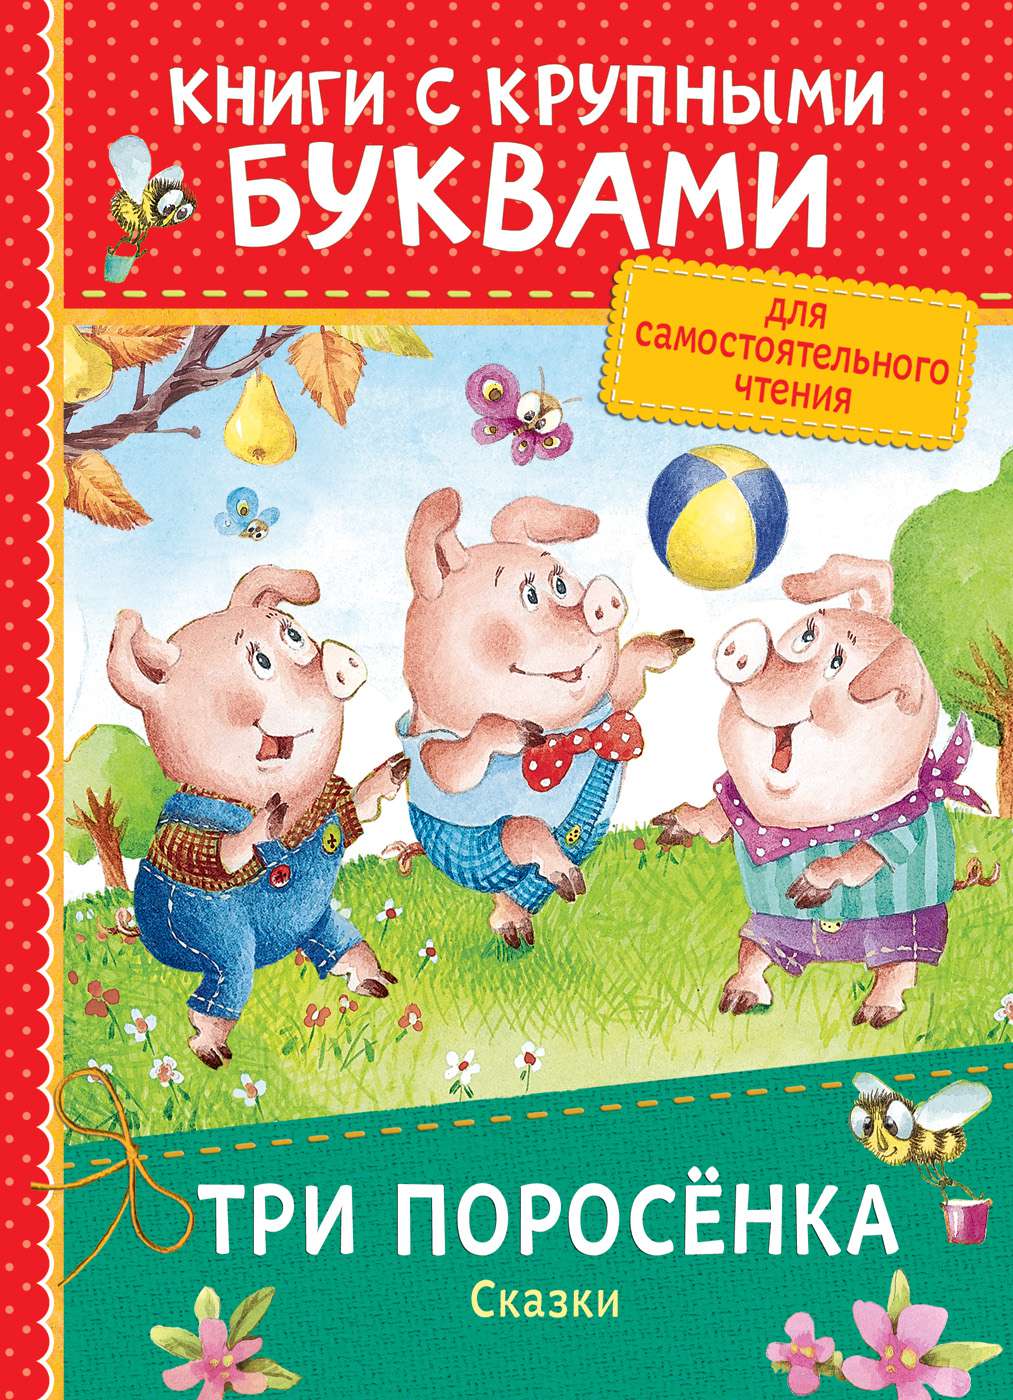 Книга 34262 Три поросенка.Сказки (Книги с крупными буквами) Росмэн - Ульяновск 